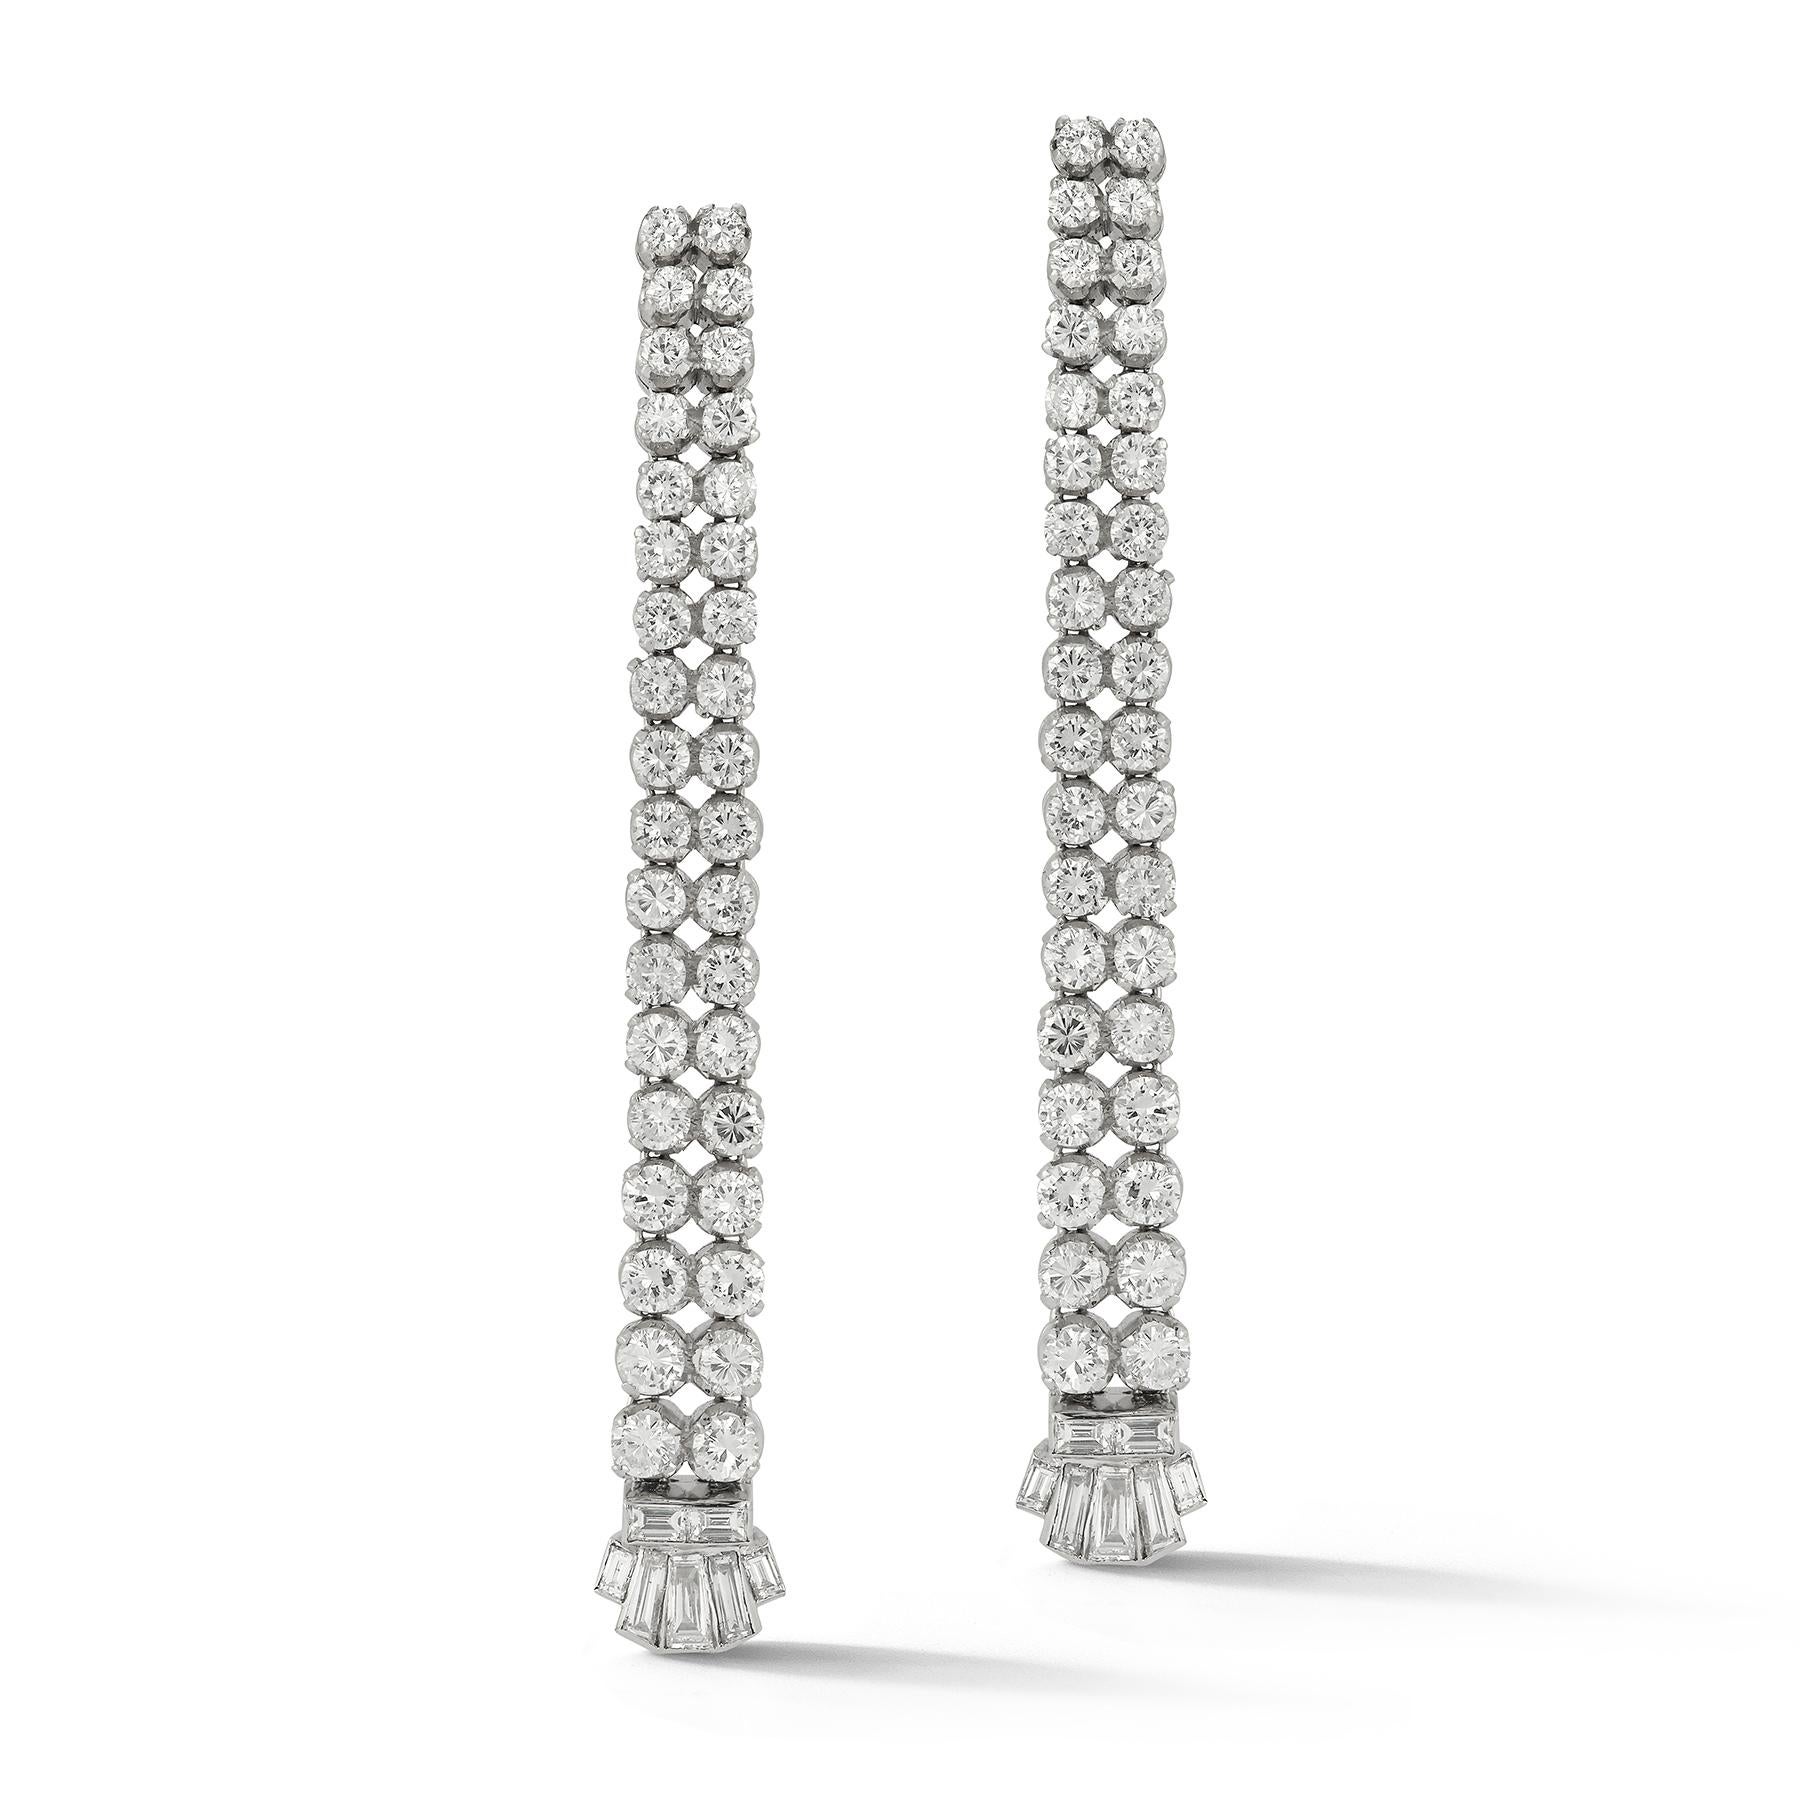 Art Deco Diamant-Ohrringe

Zweireihige lineare Diamant-Ohrringe mit Stufen

2 Reihen von  72 Diamanten im Rundschliff an 14 in Platin gefassten Diamanten im Baguetteschliff

Ungefähr 5 Karat Diamanten

Abmessungen: 3